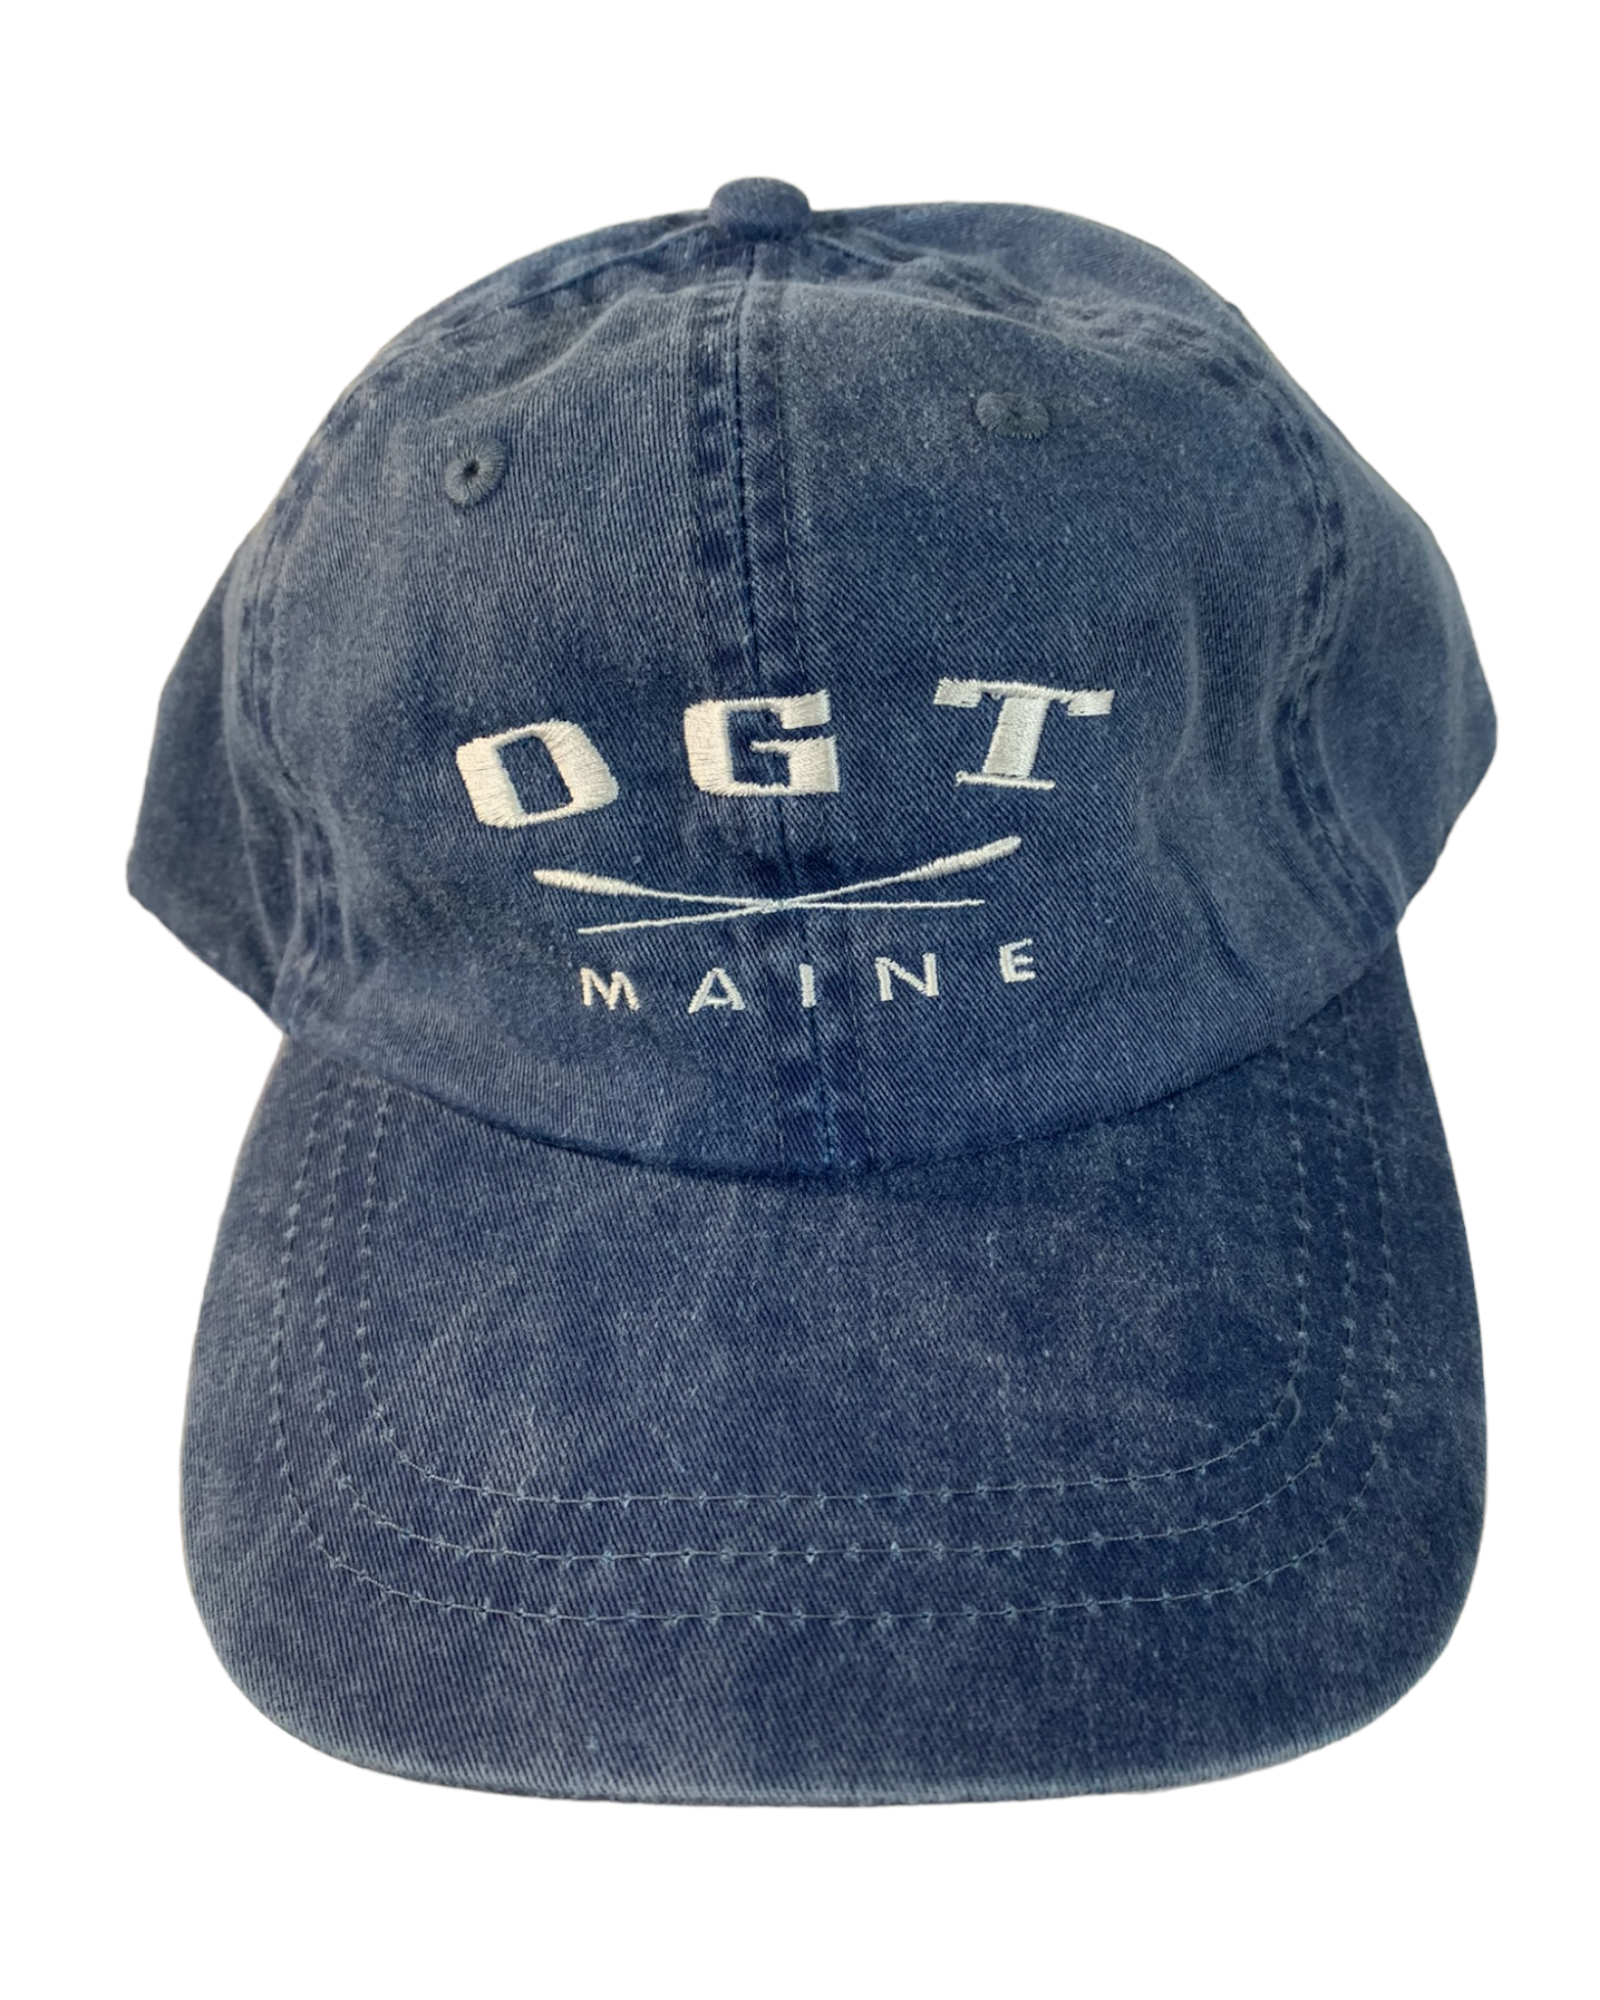 OGT Crossed Oar Hat O